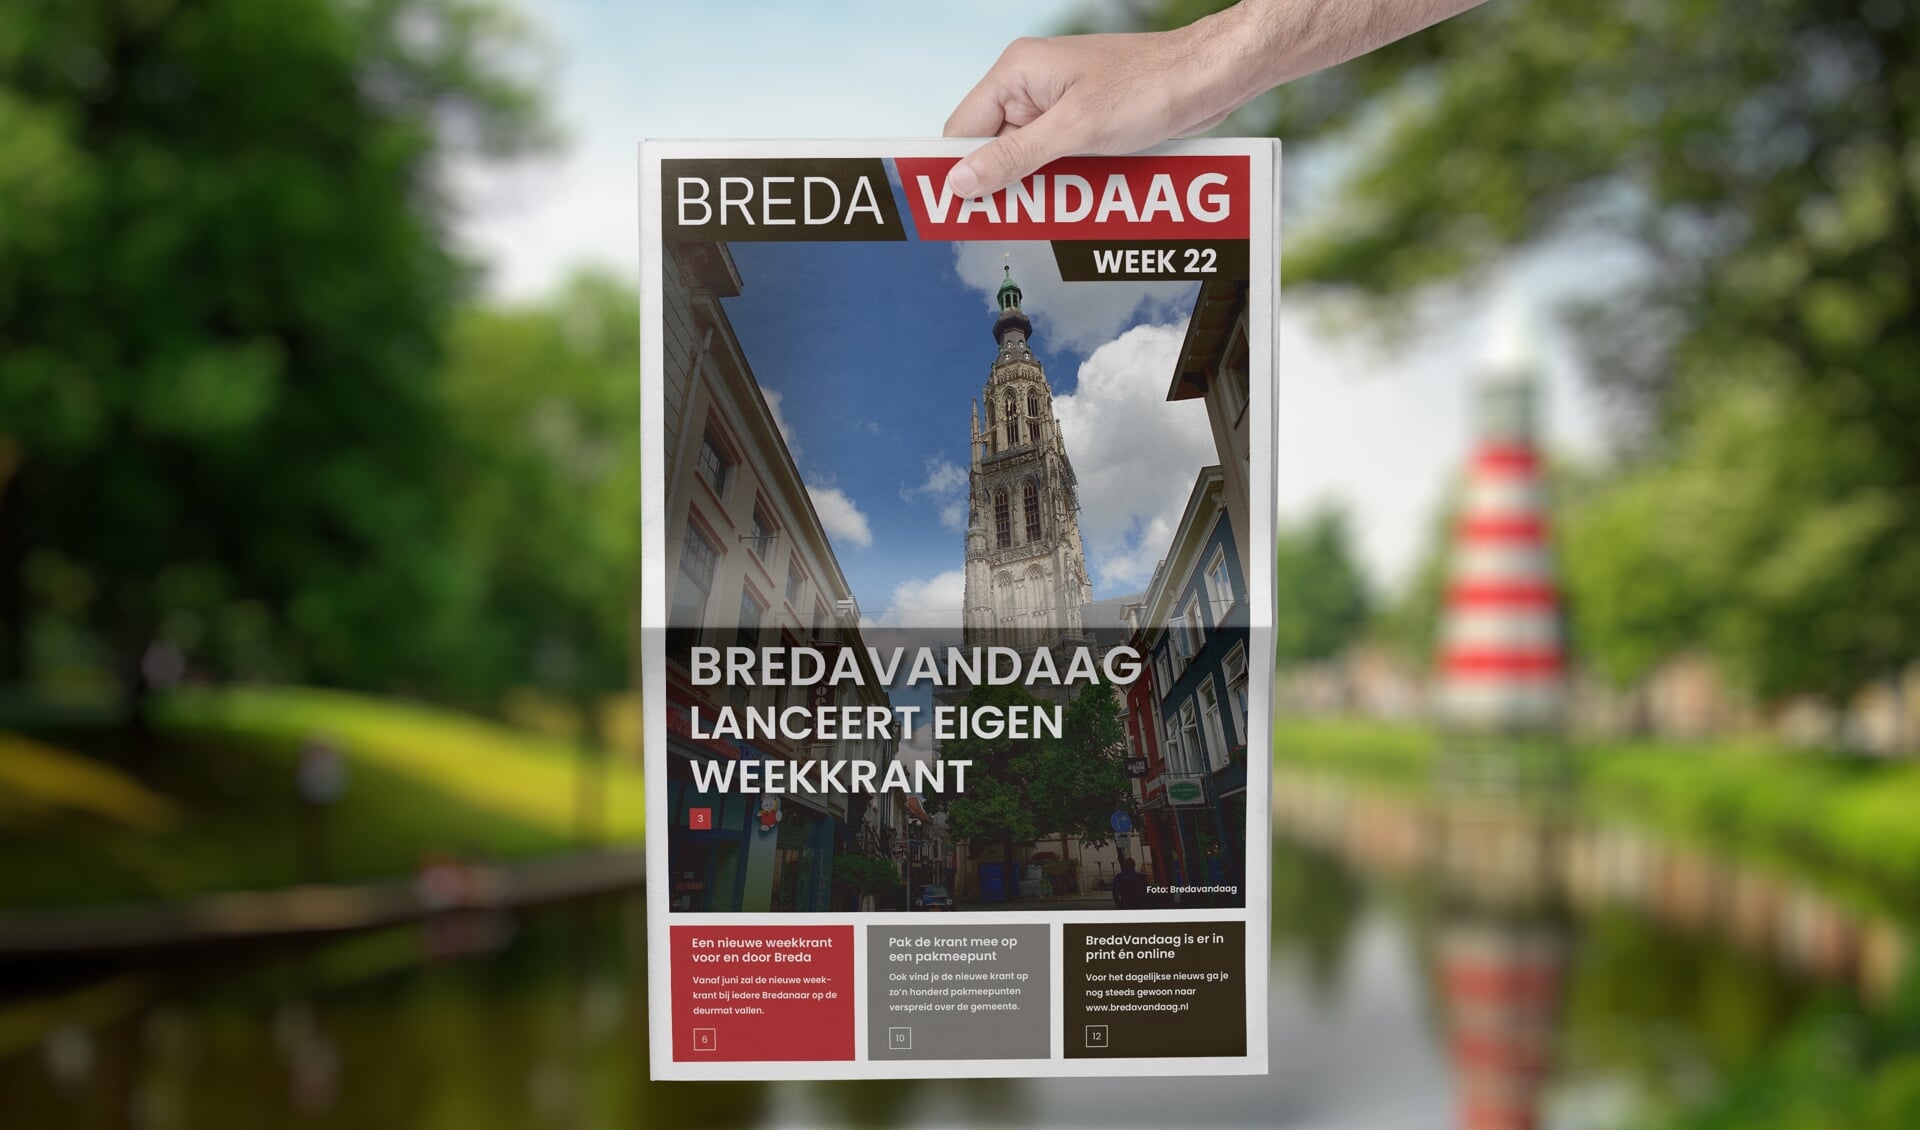 BredaVandaag brengt vanaf juni haar eigen weekkrant uit